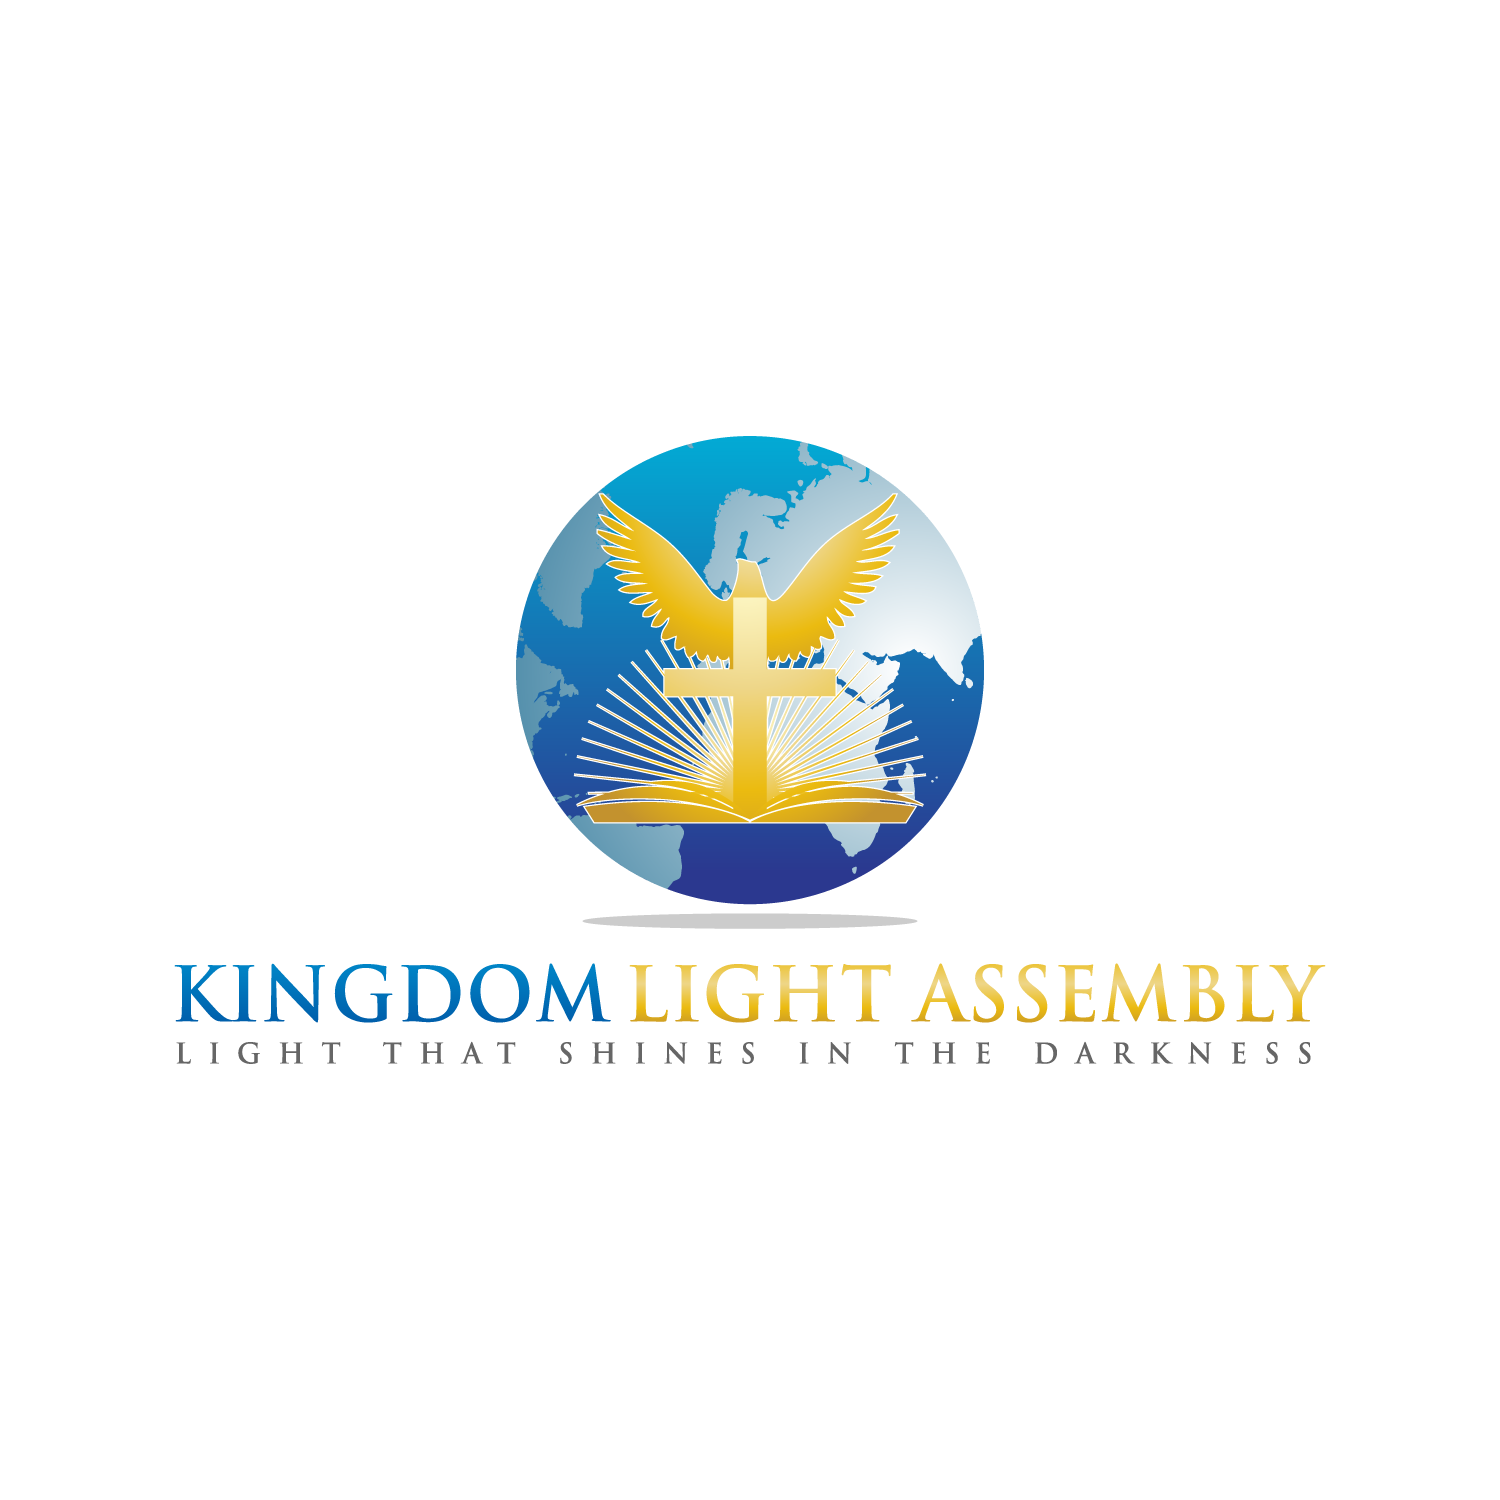 Kingdom light assembly